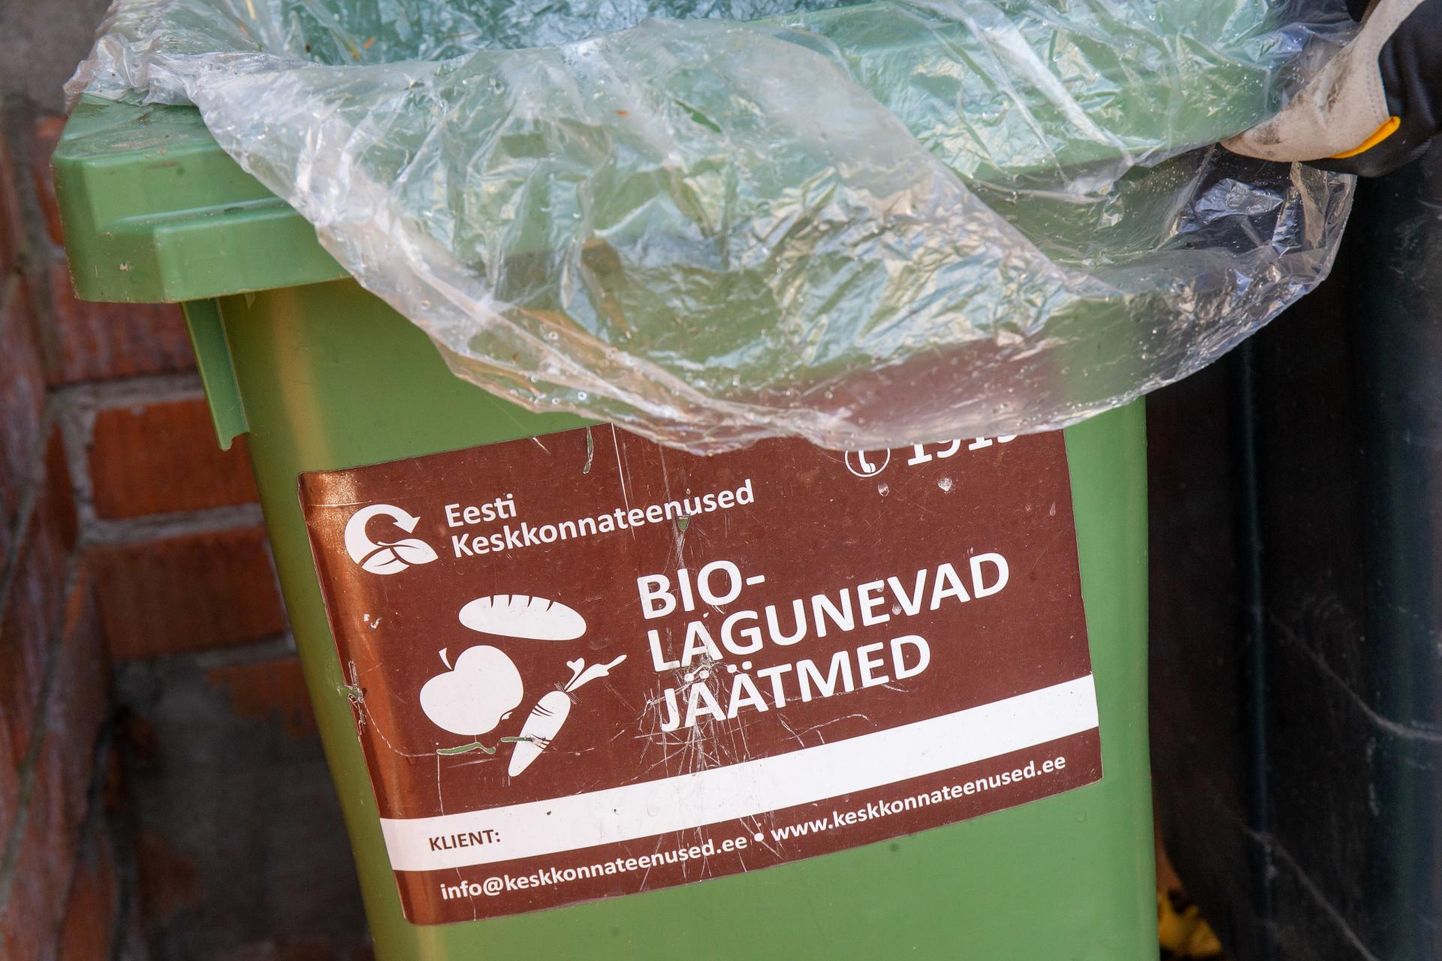 Kes hakkab biojäätmeid prügiautoga ära saatma, peab need panema eraldi prügikasti ja soovitavalt lahtisena. Kilekotis võib neid hoiustada, aga kilekott tuleb panna olmeprügi kasti, biojäätmed eraldi lahtisena biojäätmete prügikasti.